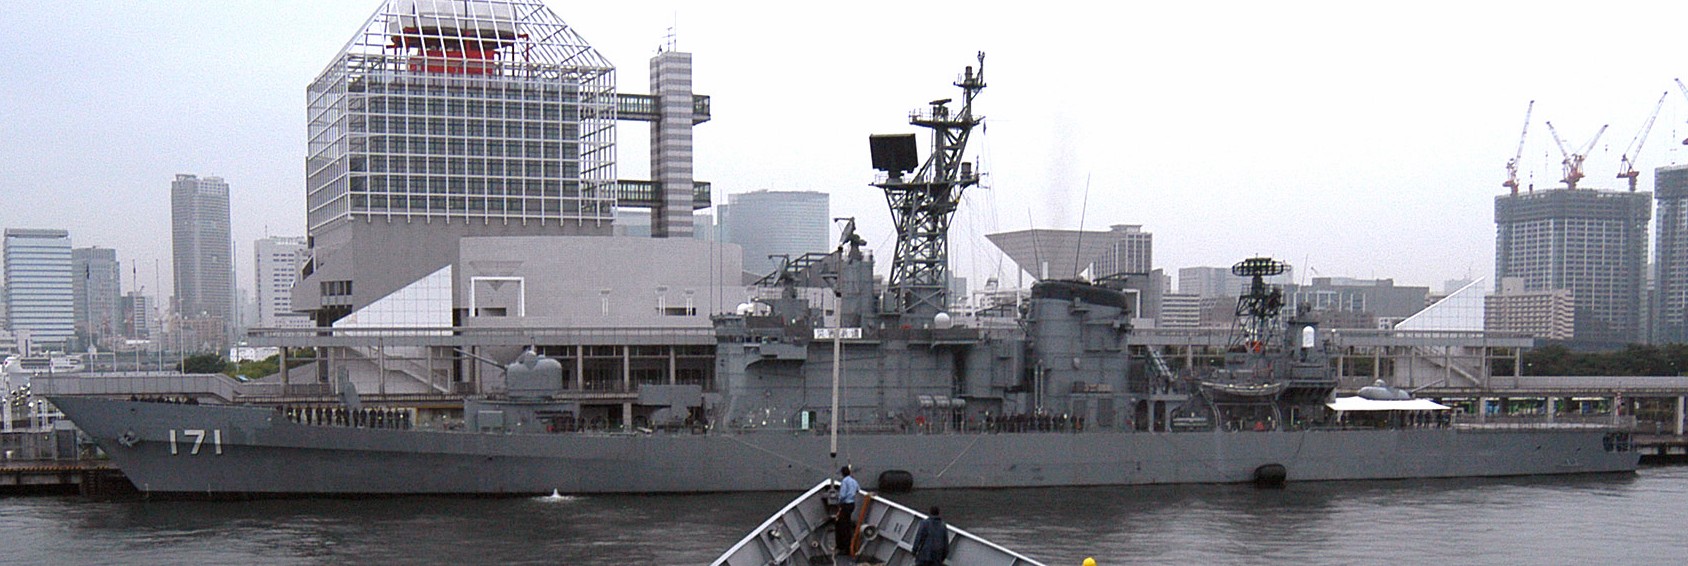 ddg-171 jds hatakaze class guided missile destroyer japan maritime self defense force jmsdf 14